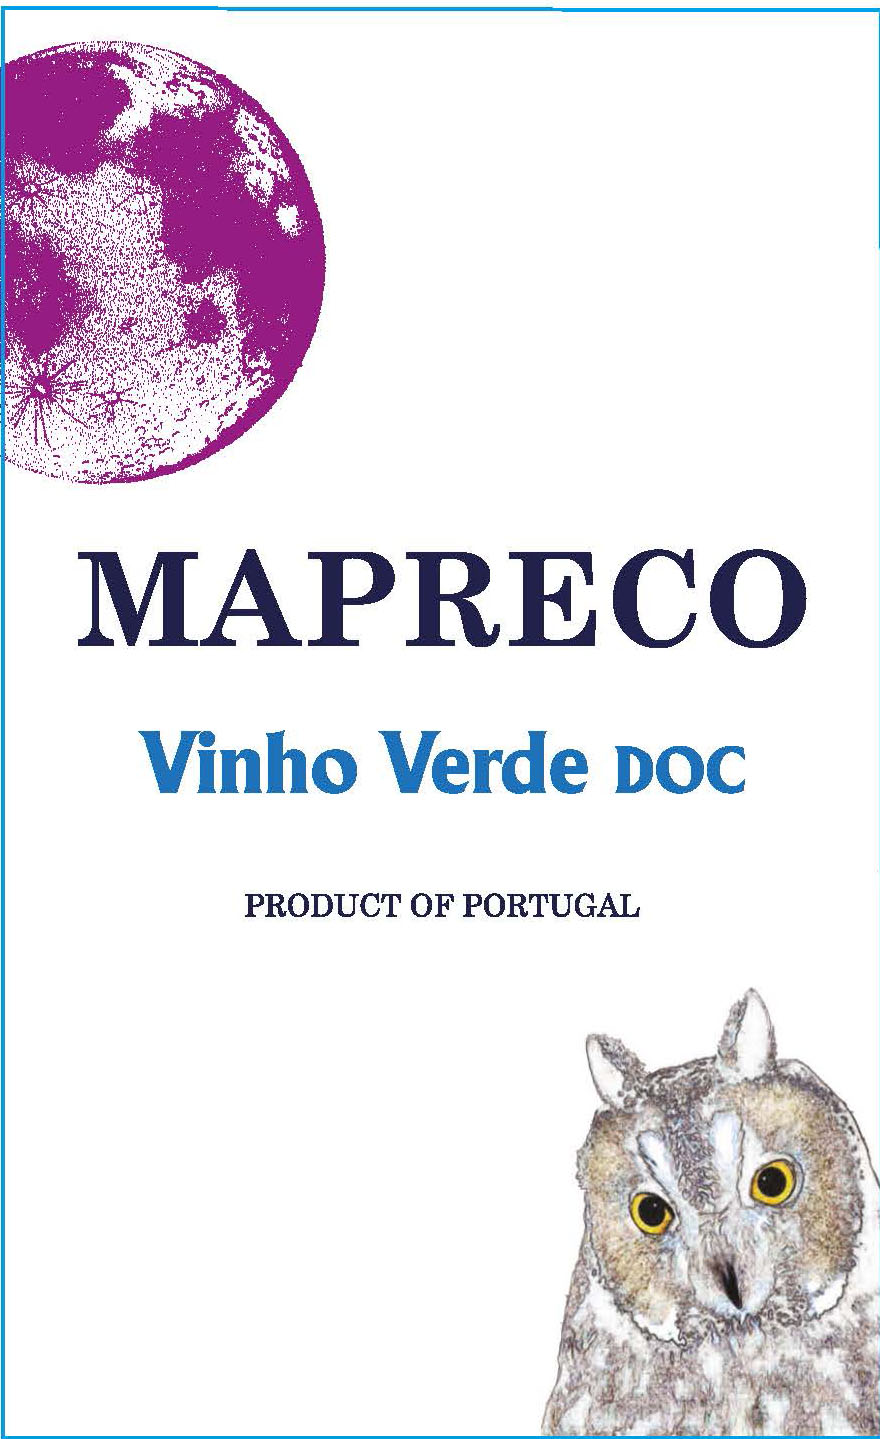 Mapreco - Vinho Verde label